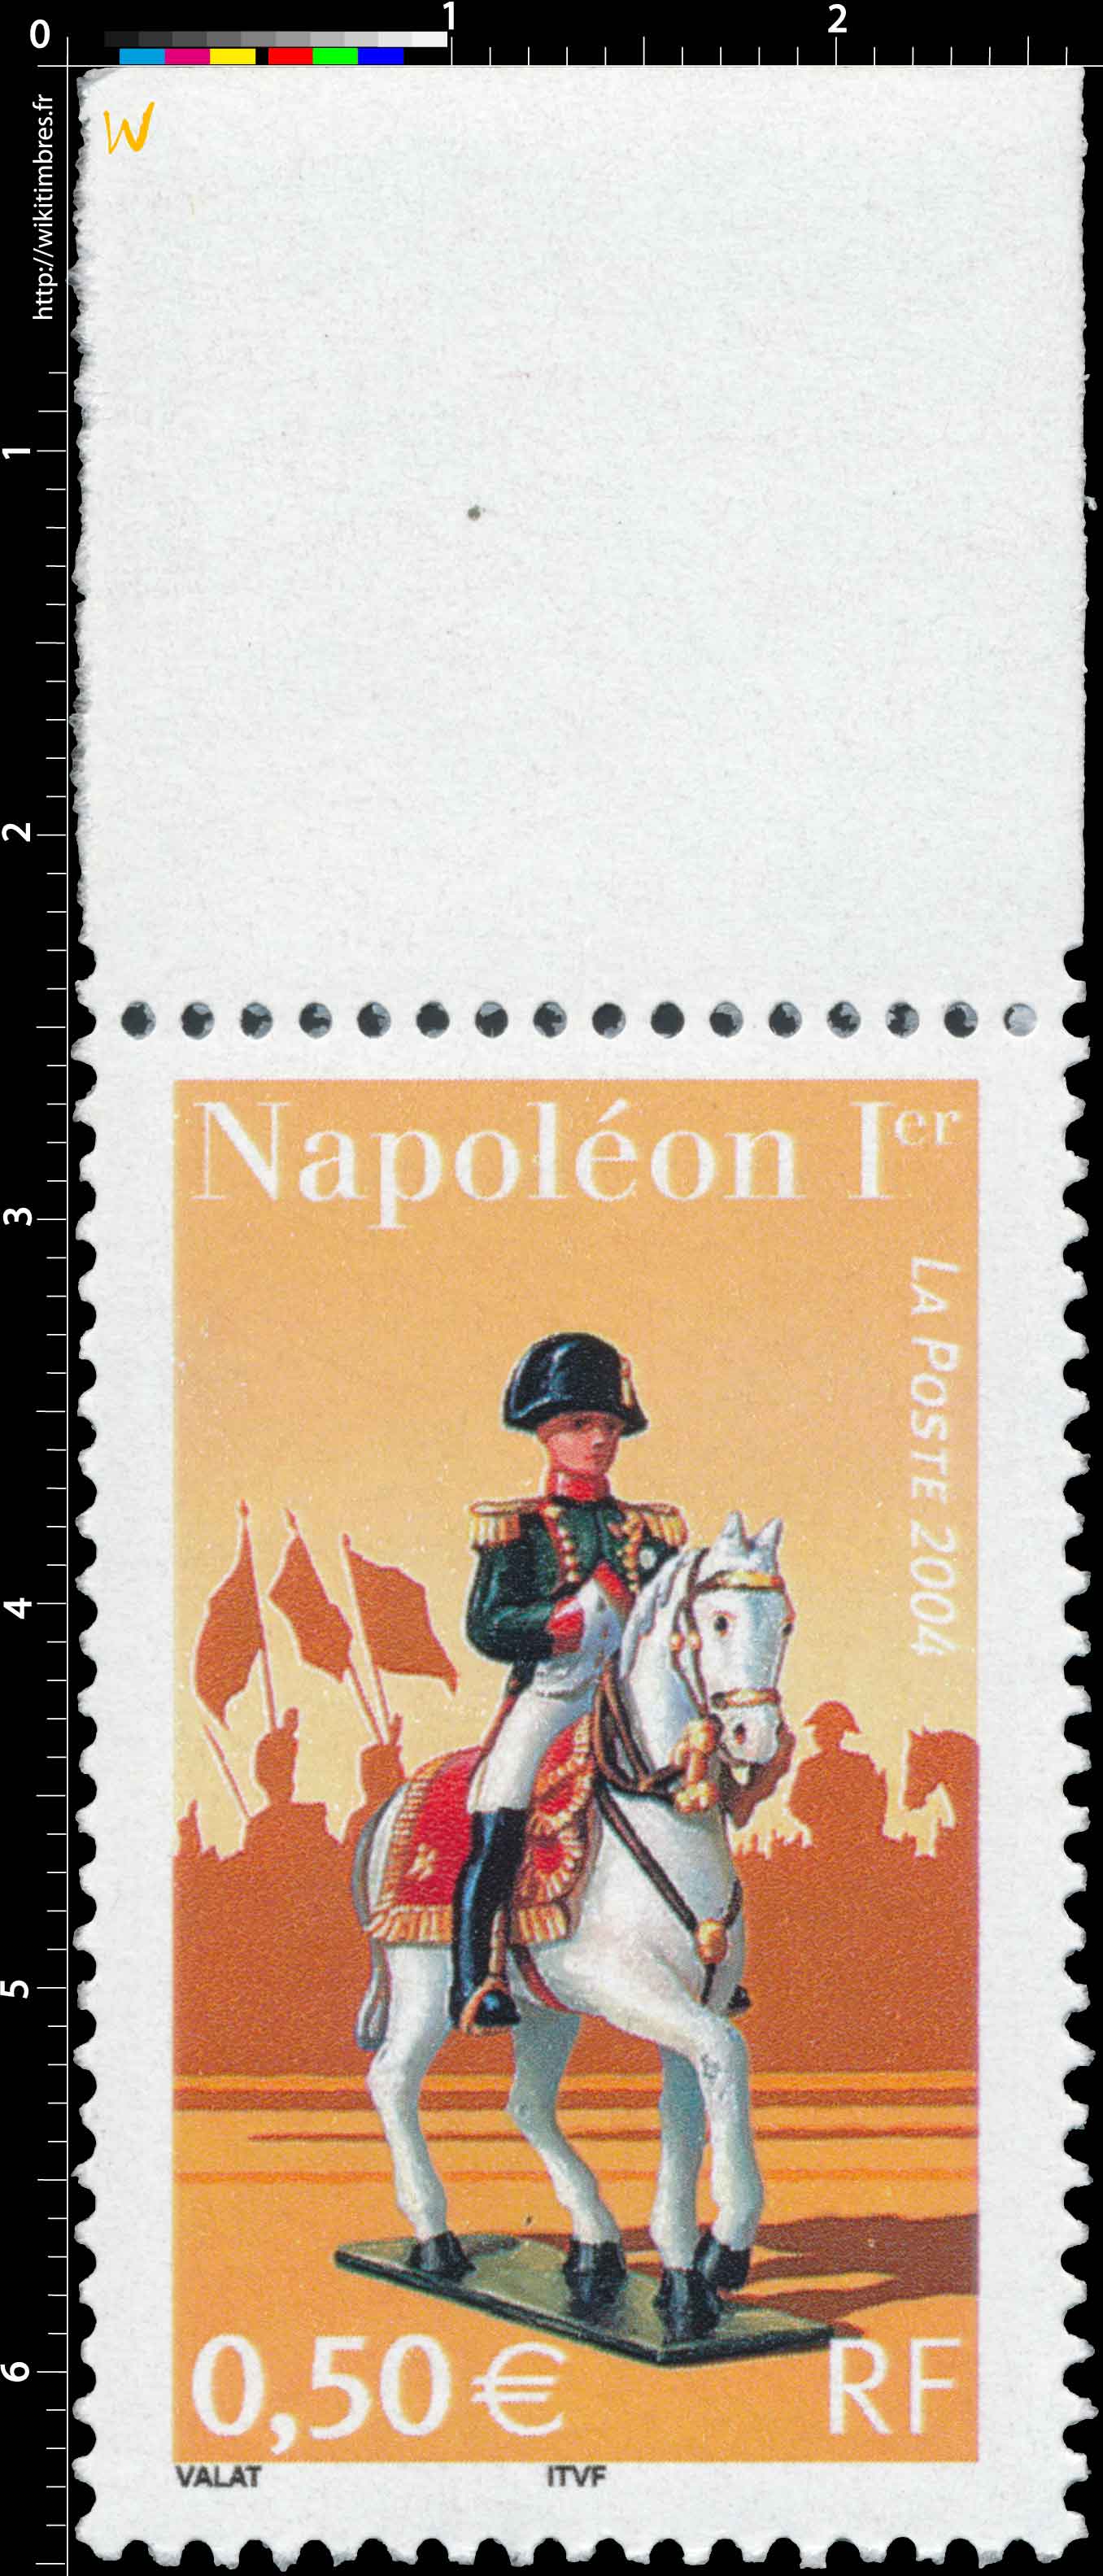 2004 Napoléon Ier